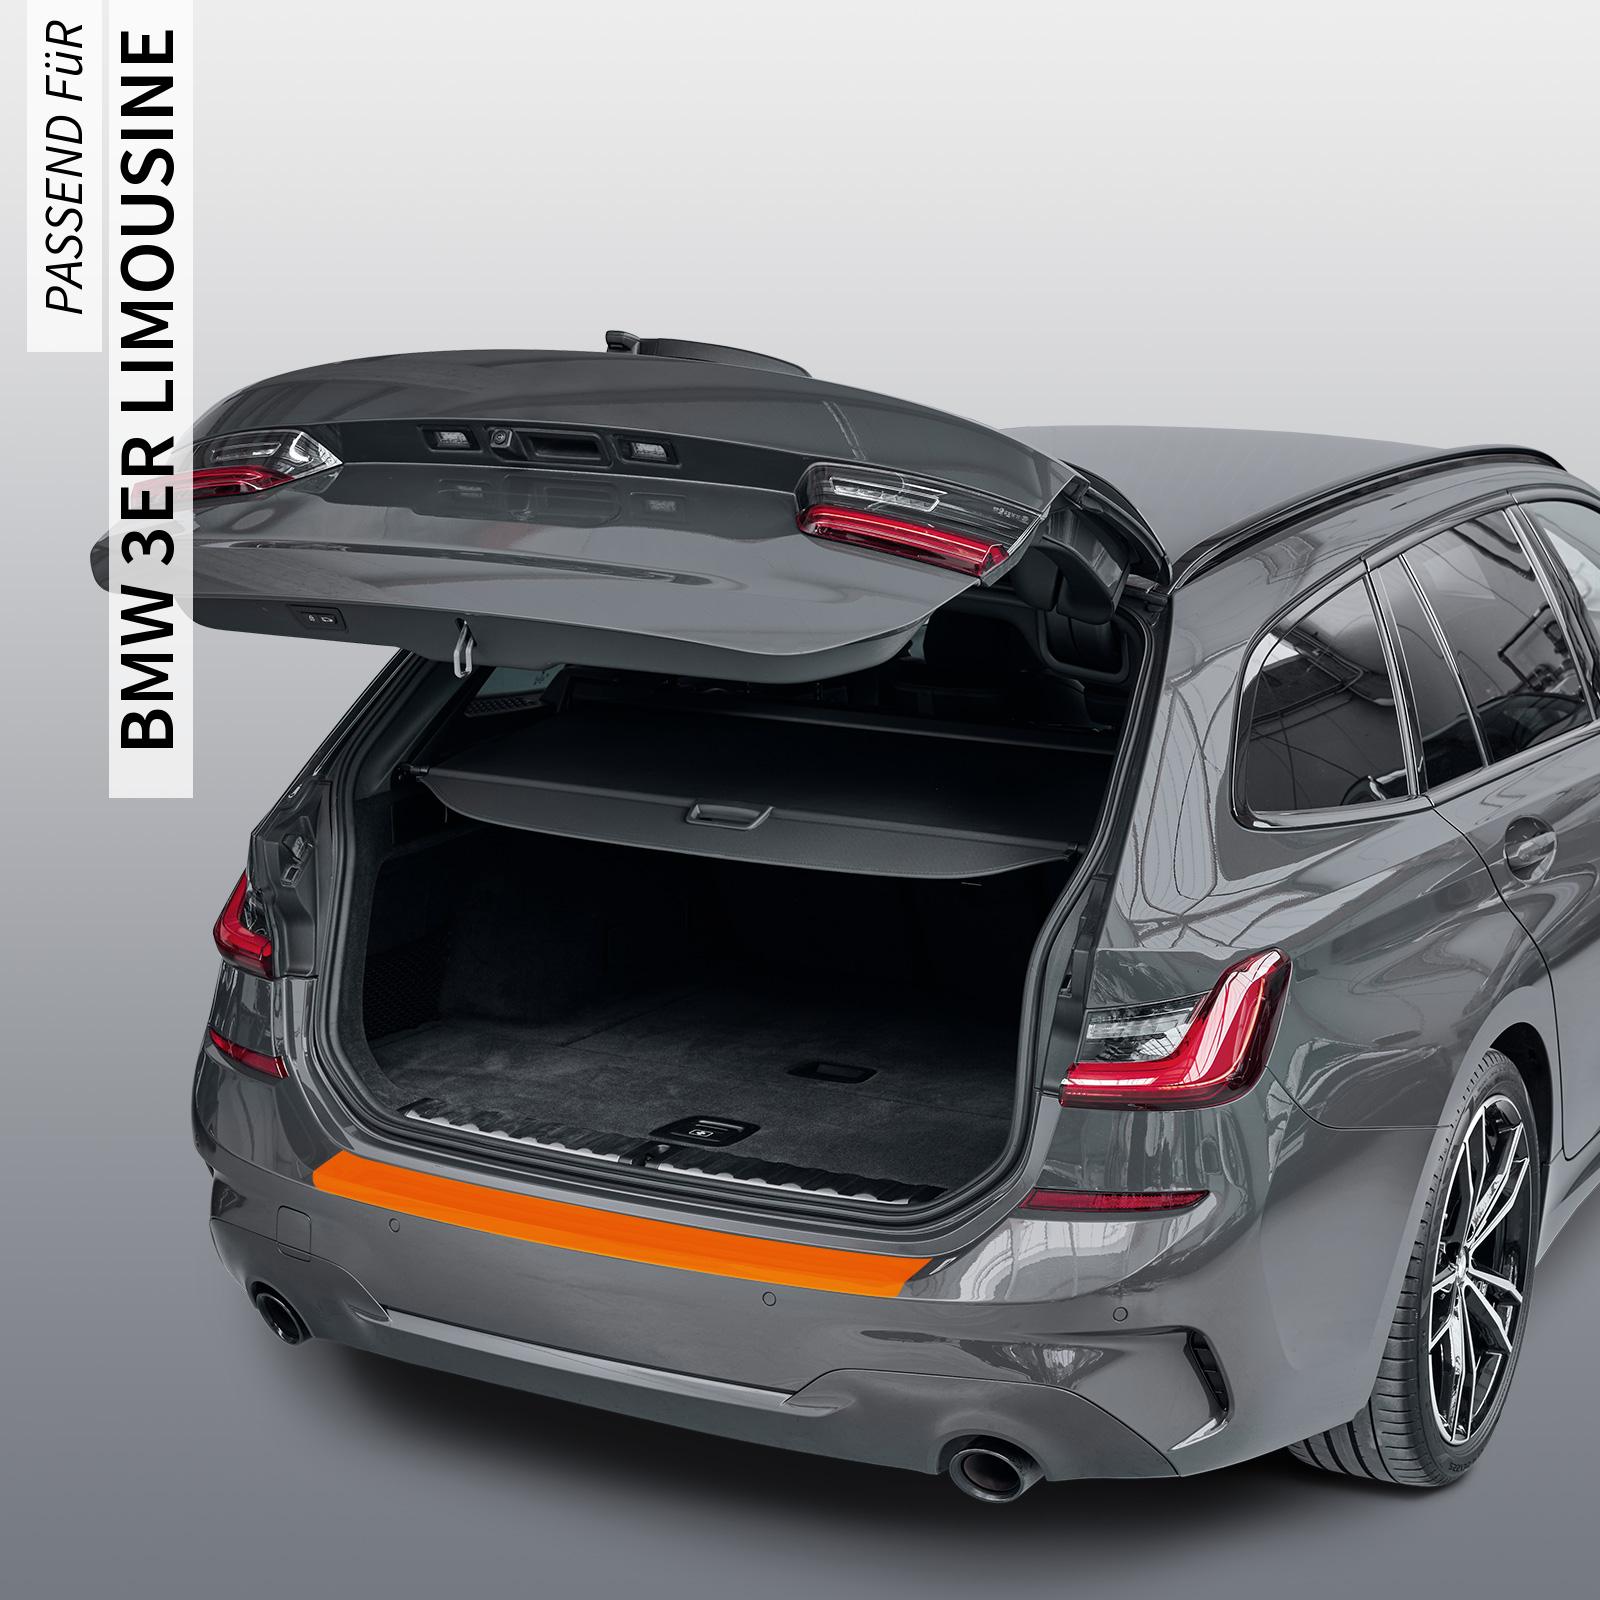 Ladekantenschutzfolie - Transparent Glatt Hochglänzend 240 µm stark für BMW 3er Limousine Typ E90, ab BJ 2005-2012